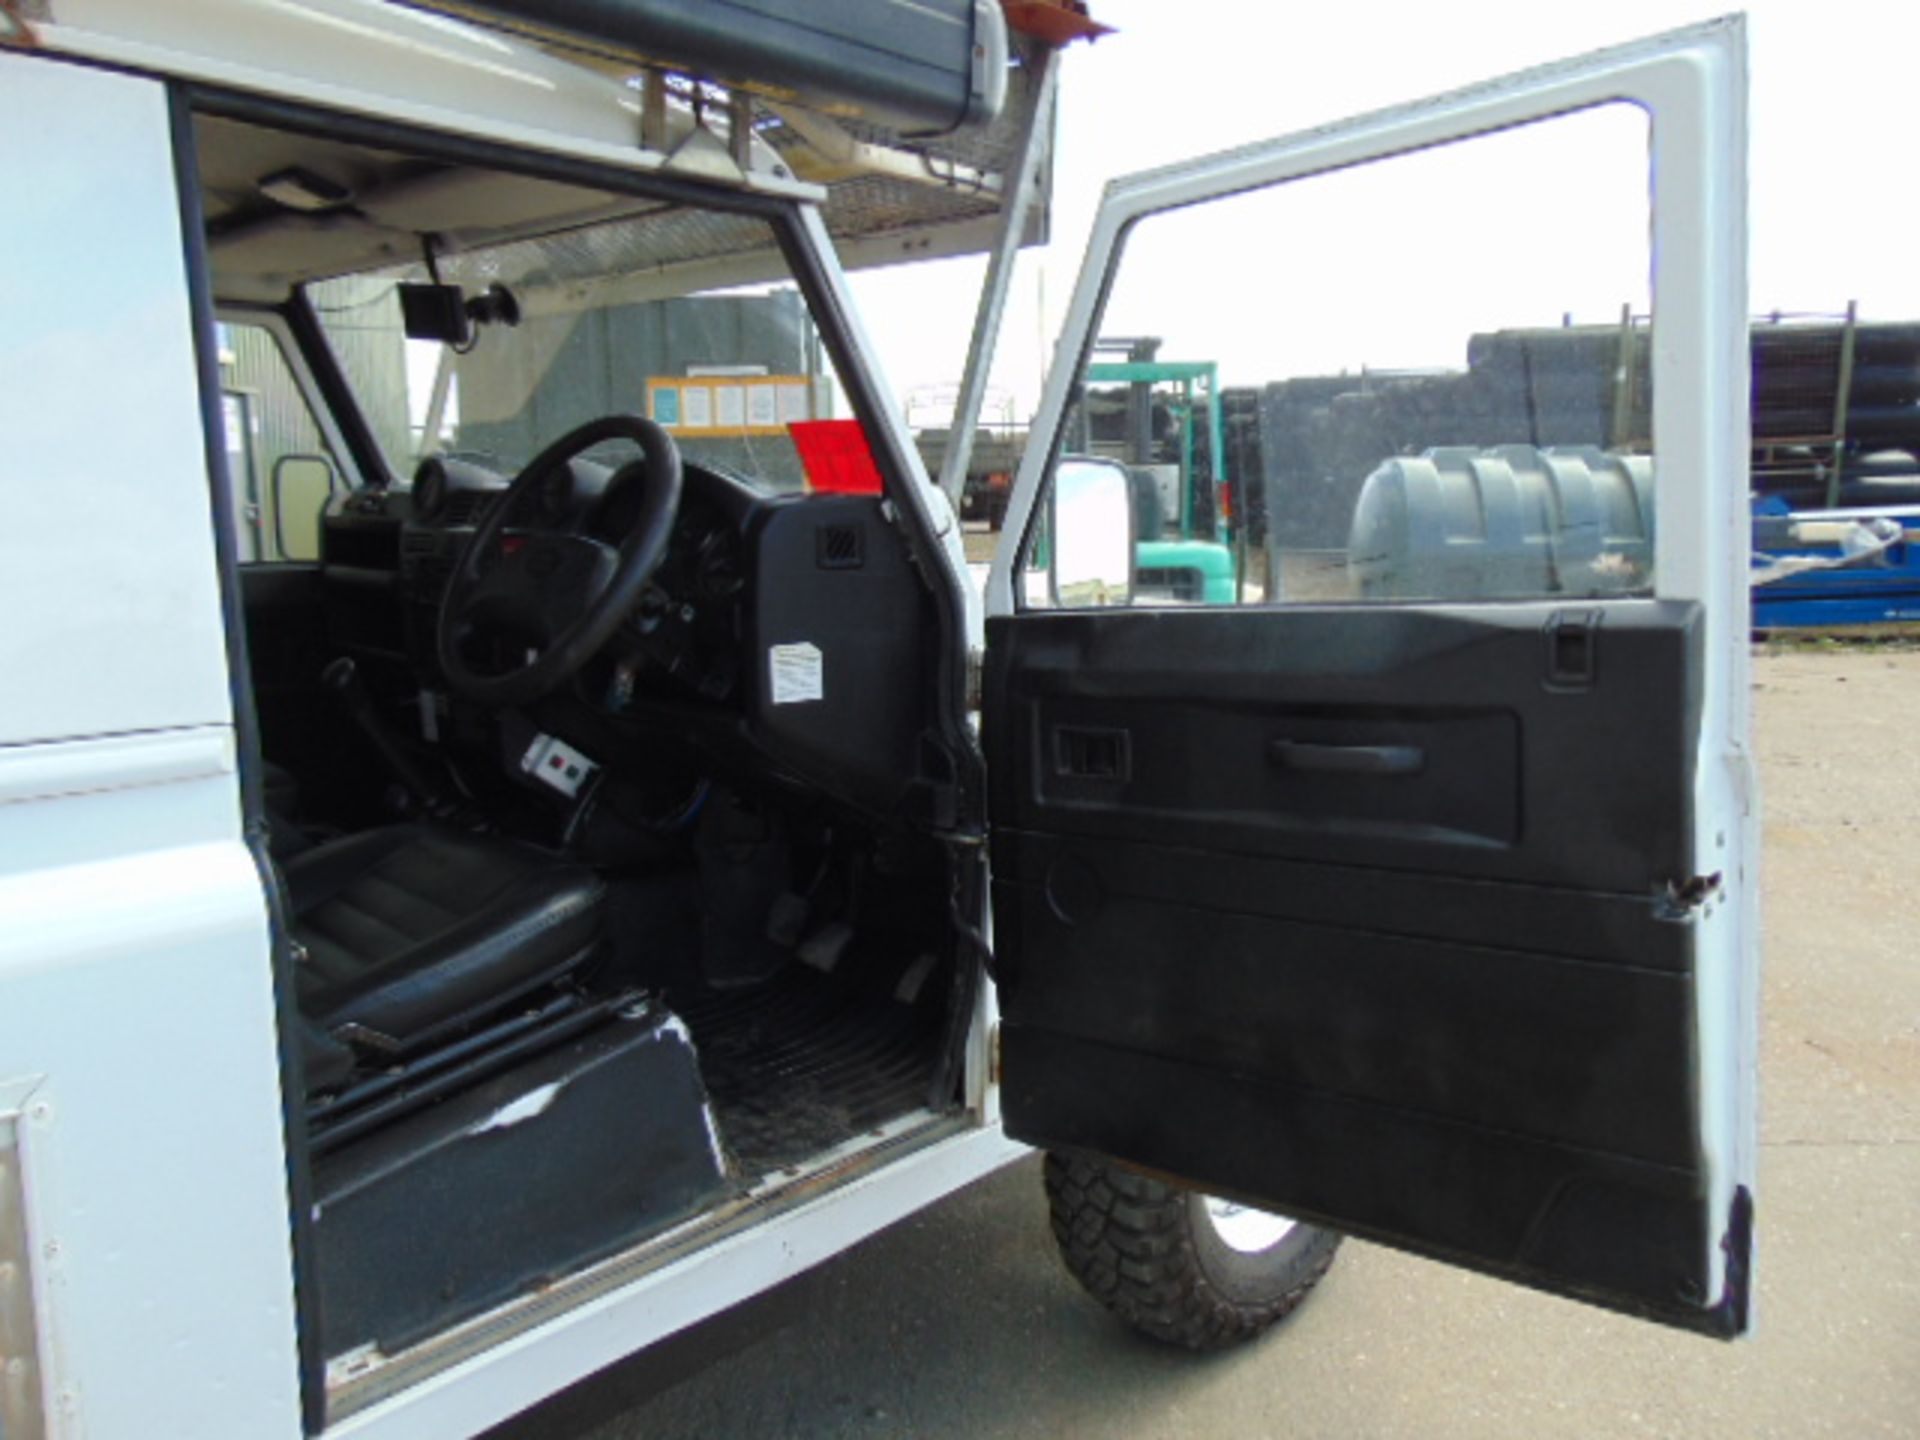 2011 Land Rover Defender 110 Puma hardtop 4x4 Utility vehicle (mobile workshop) - Image 28 of 45